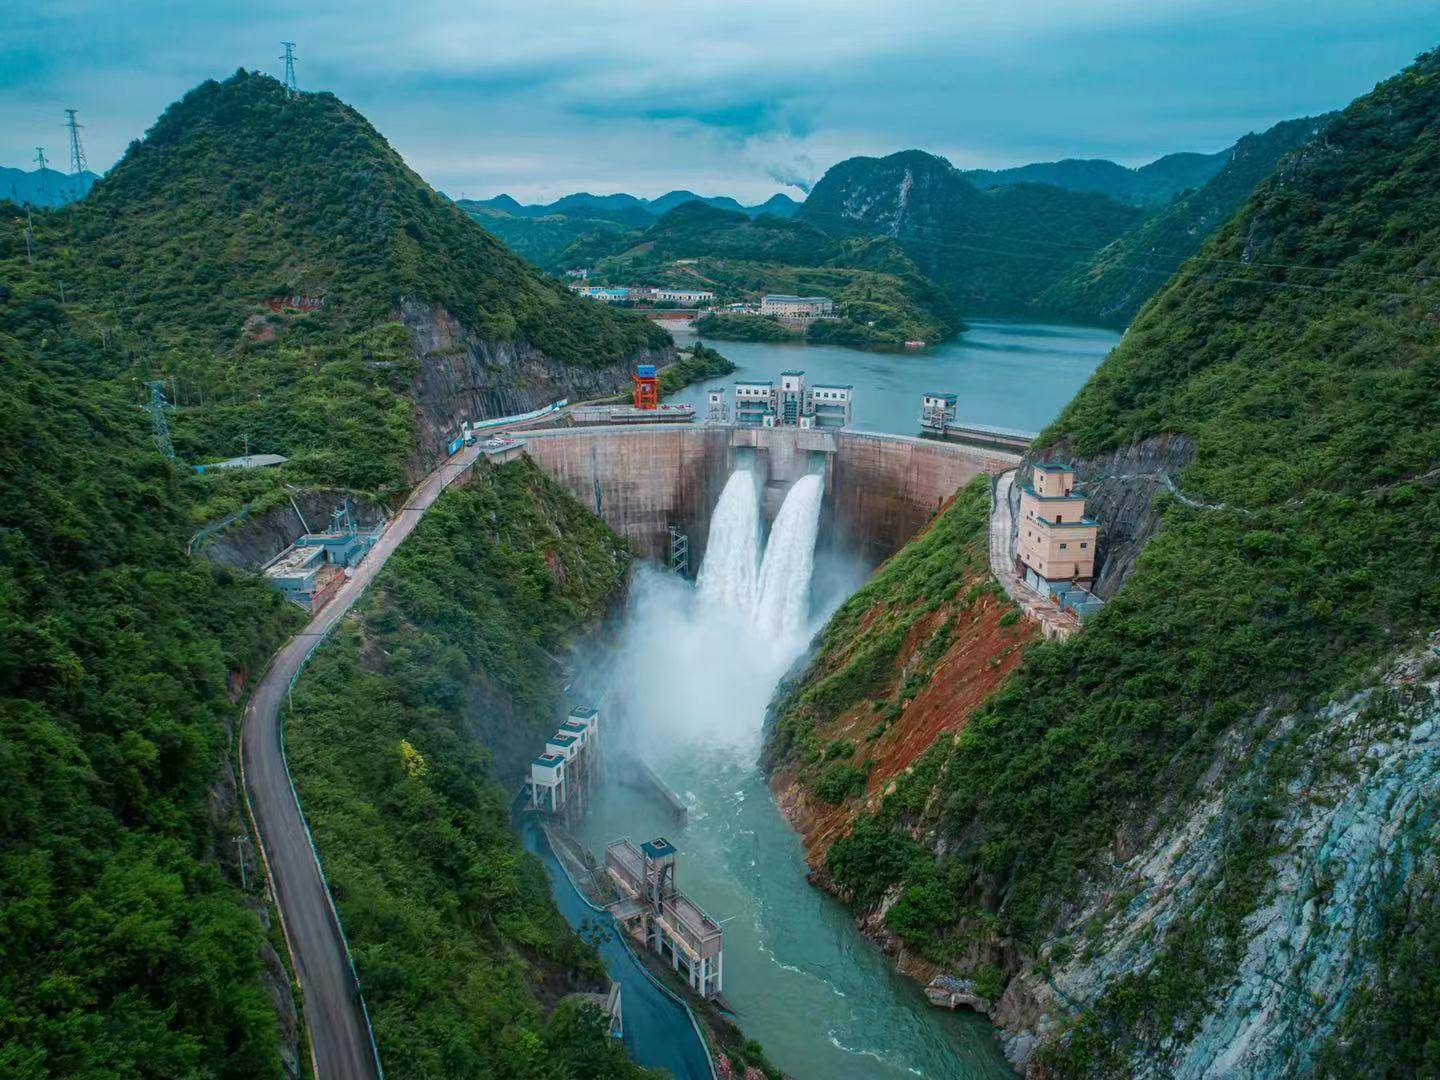 贵州省马岭水利枢纽开发有限公司主要负责兴义市马岭水利枢纽项目建设